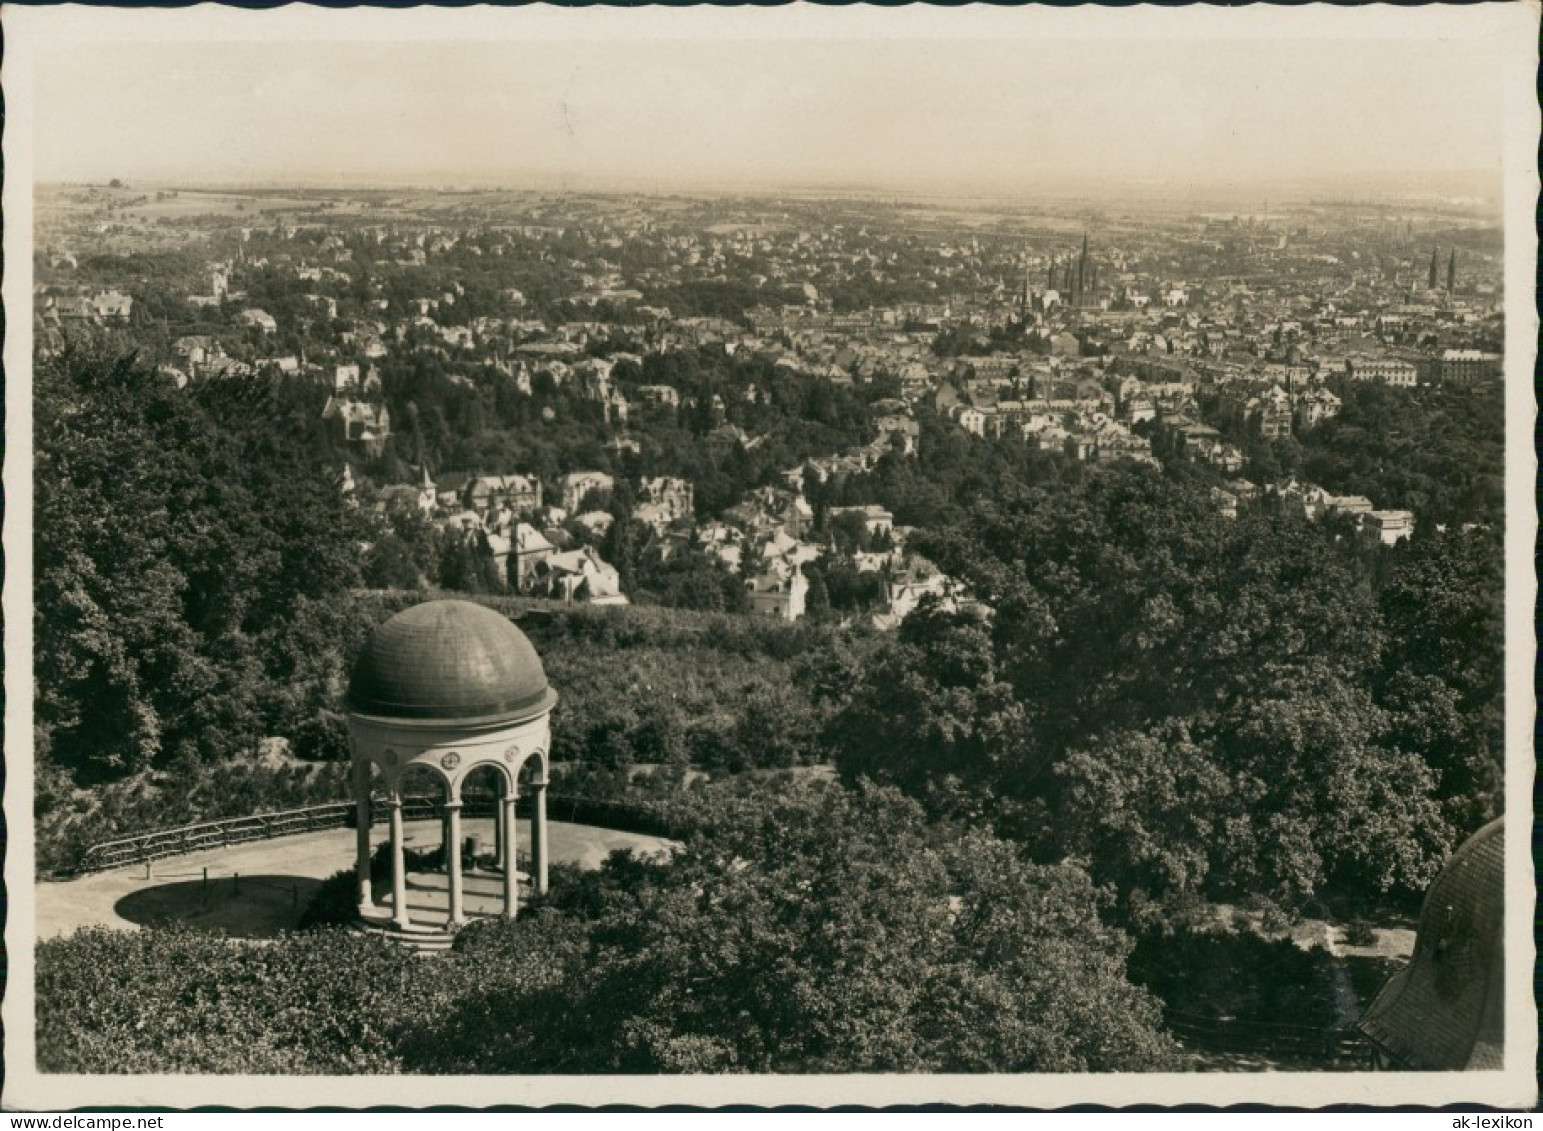 Ansichtskarte Wiesbaden Panorama-Ansicht, Neroberg Tempel 1932 - Wiesbaden